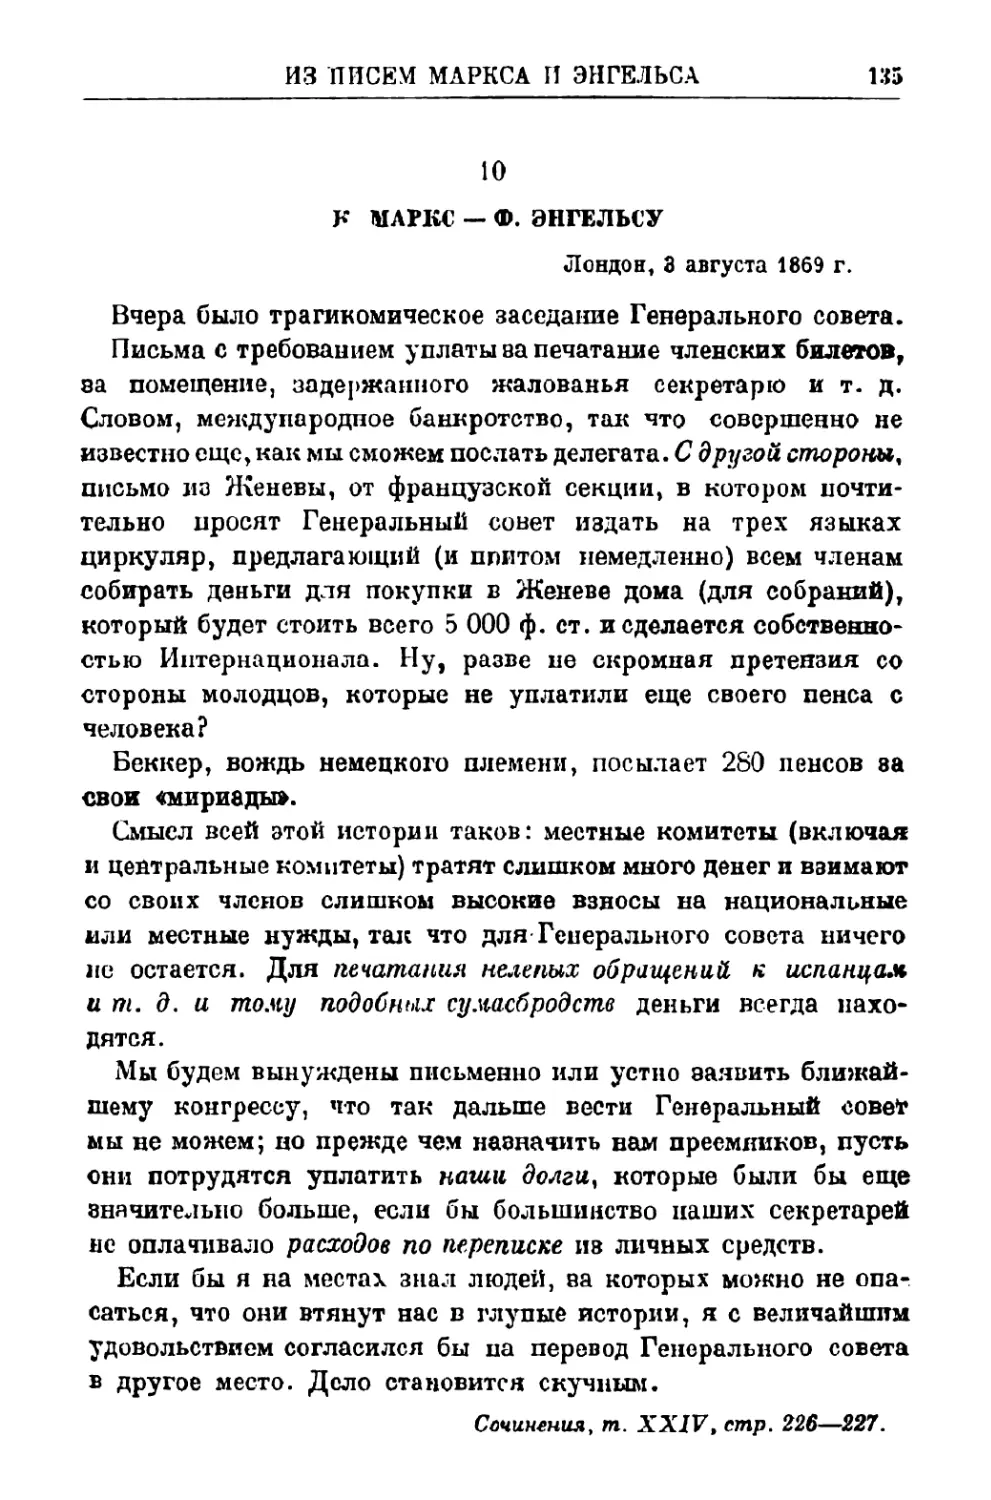 10. К. Маркс — Ф. Энгельсу, 3 августа 1869 г